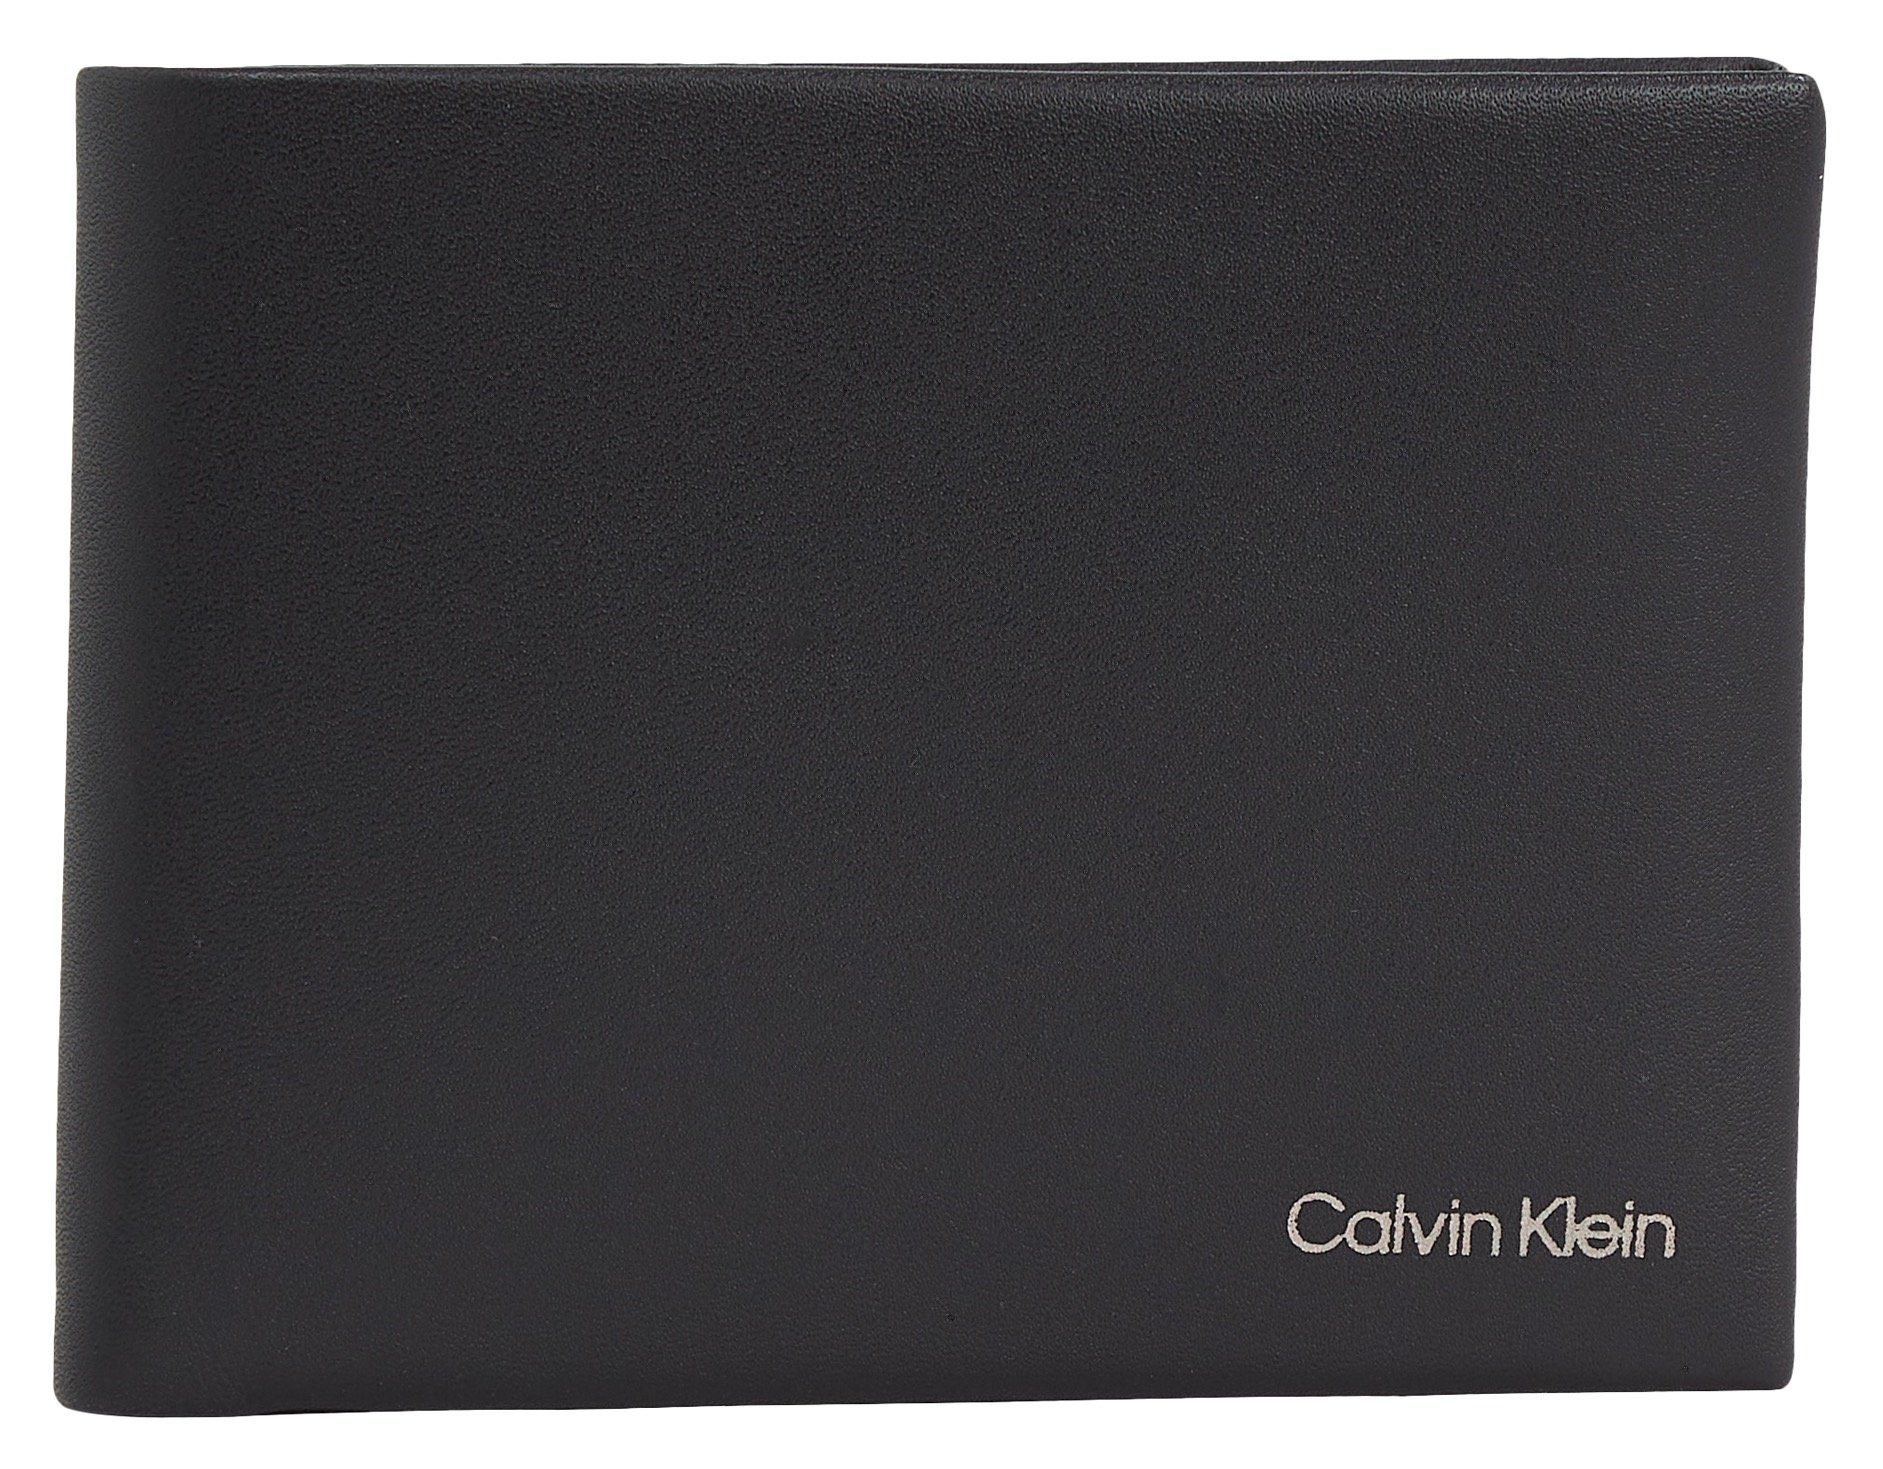 Geldbörse Calvin Klein in TRIFOLD schlichtem 10CC W/COIN L, Design CK CONCISE